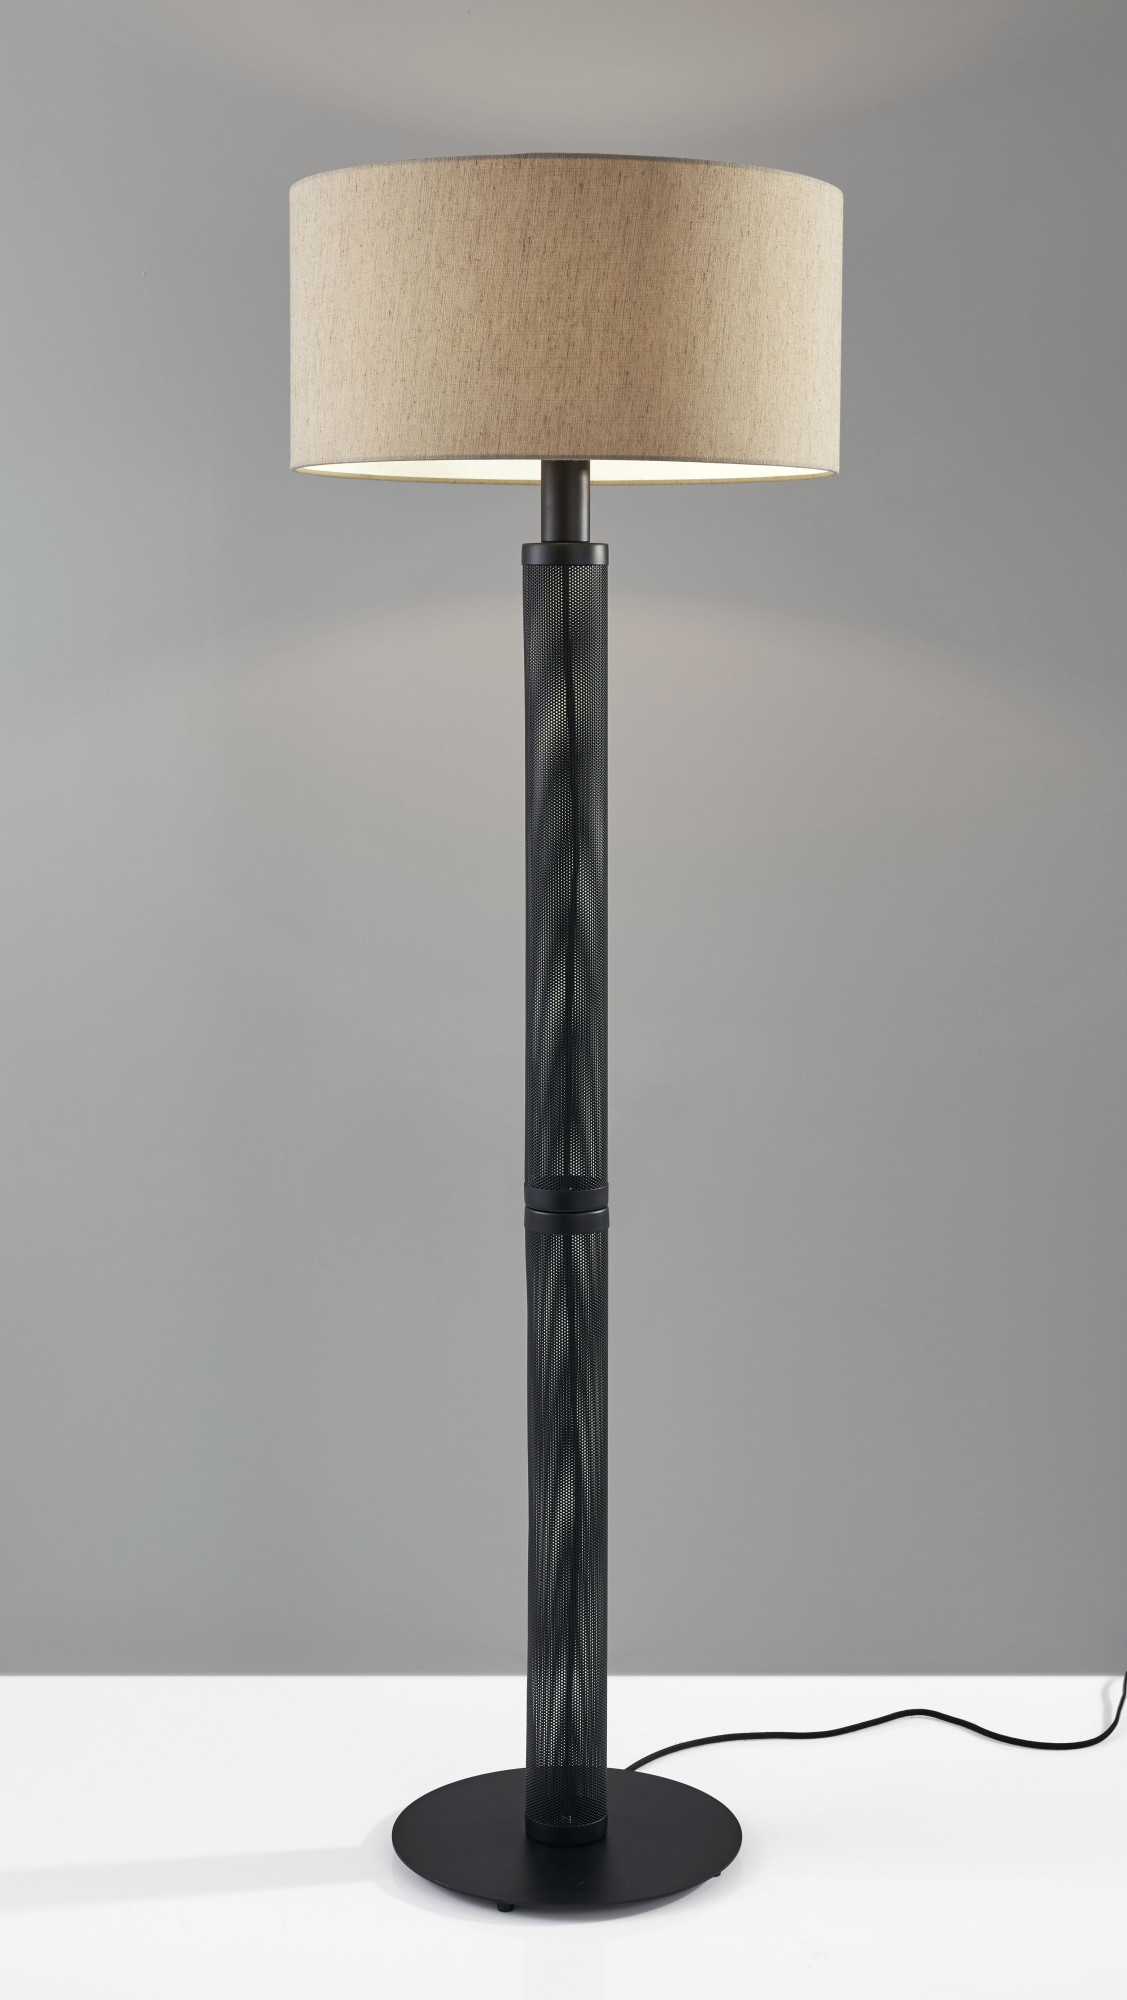 Adesso 6158 Benjamin 1 Light 62" Tall Floor Lamp - Black | eBay